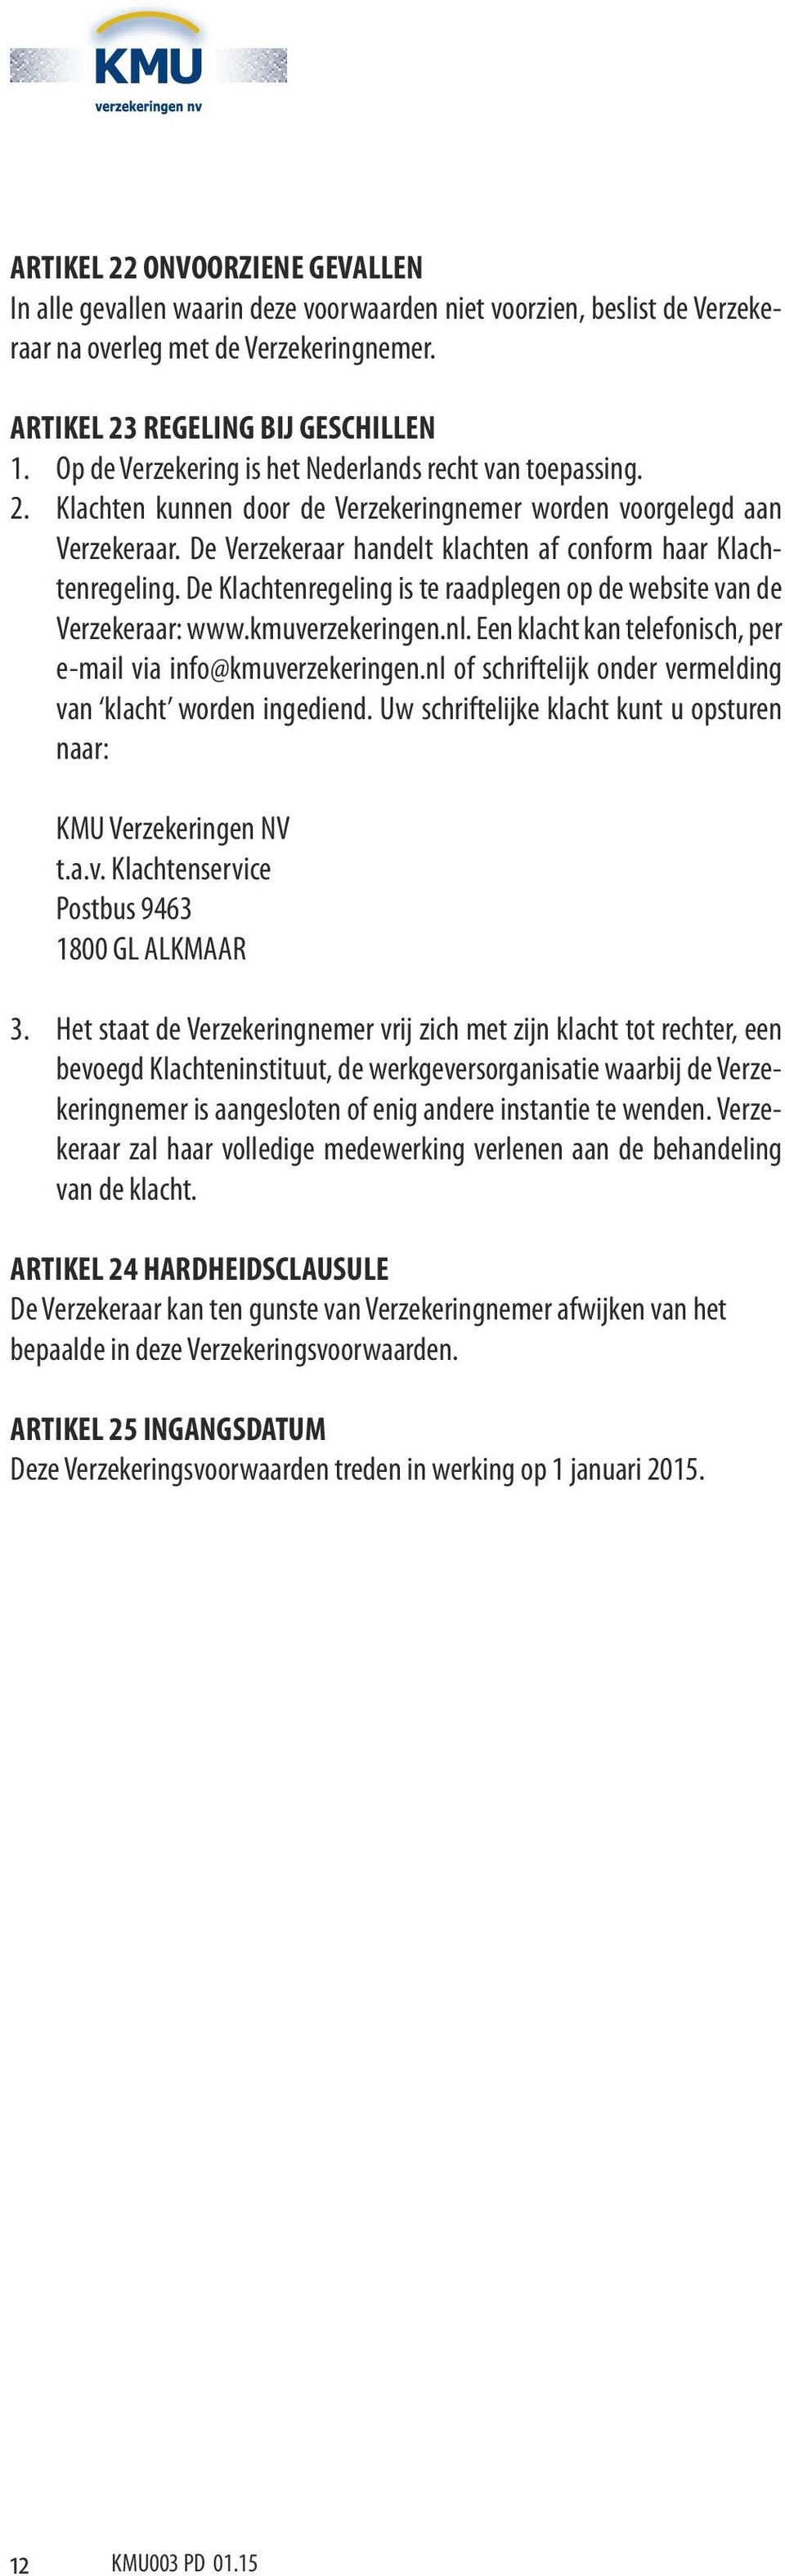 De Verzekeraar handelt klachten af conform haar Klachtenregeling. De Klachtenregeling is te raadplegen op de website van de Verzekeraar: www.kmuverzekeringen.nl.